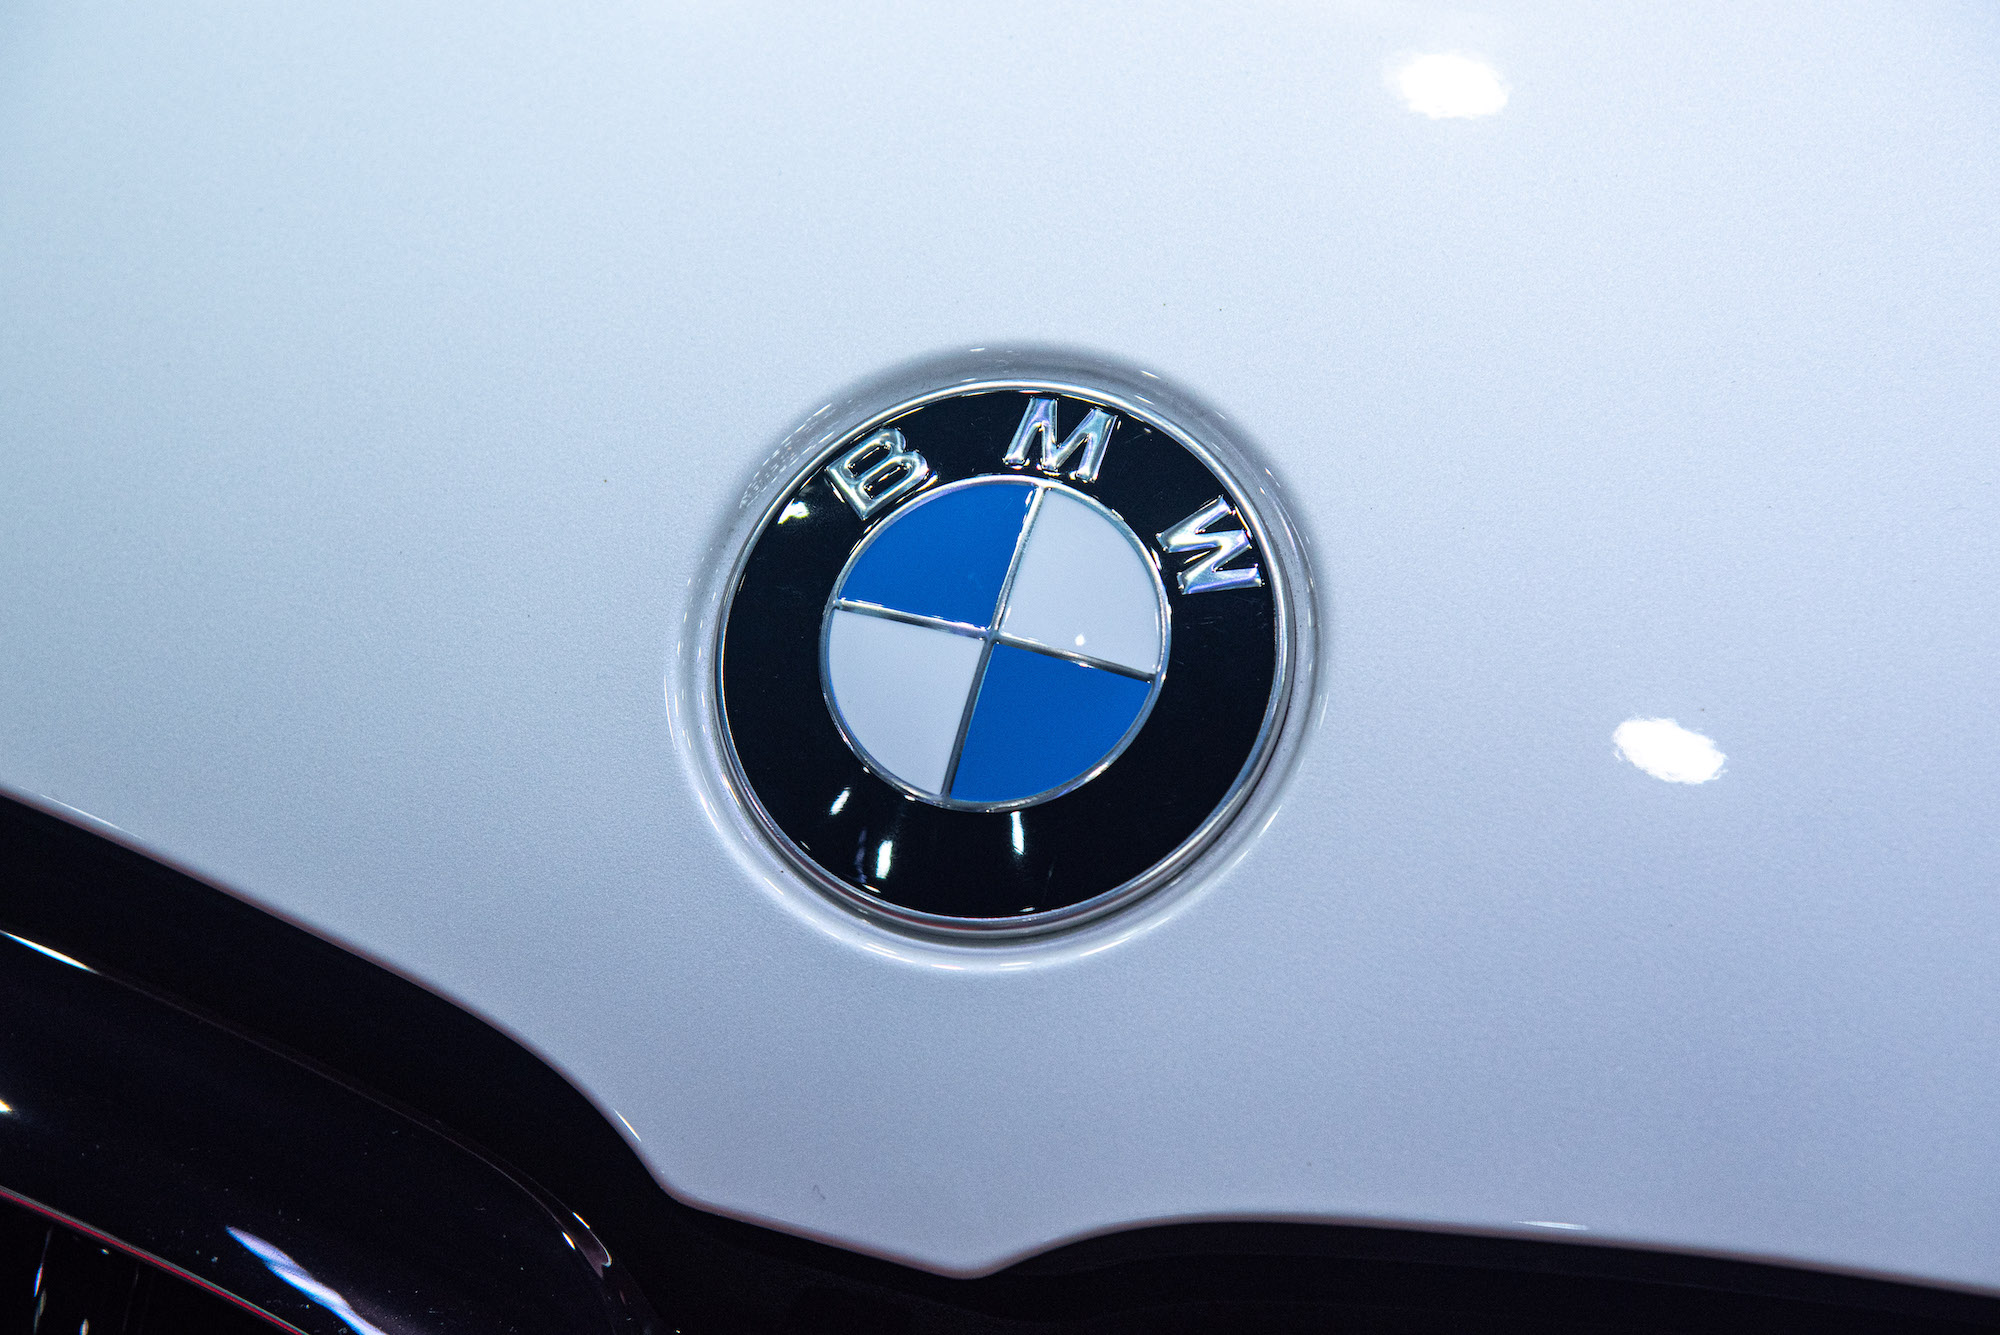 A white car with a BMW logo, with many BMW nicknames, on it.